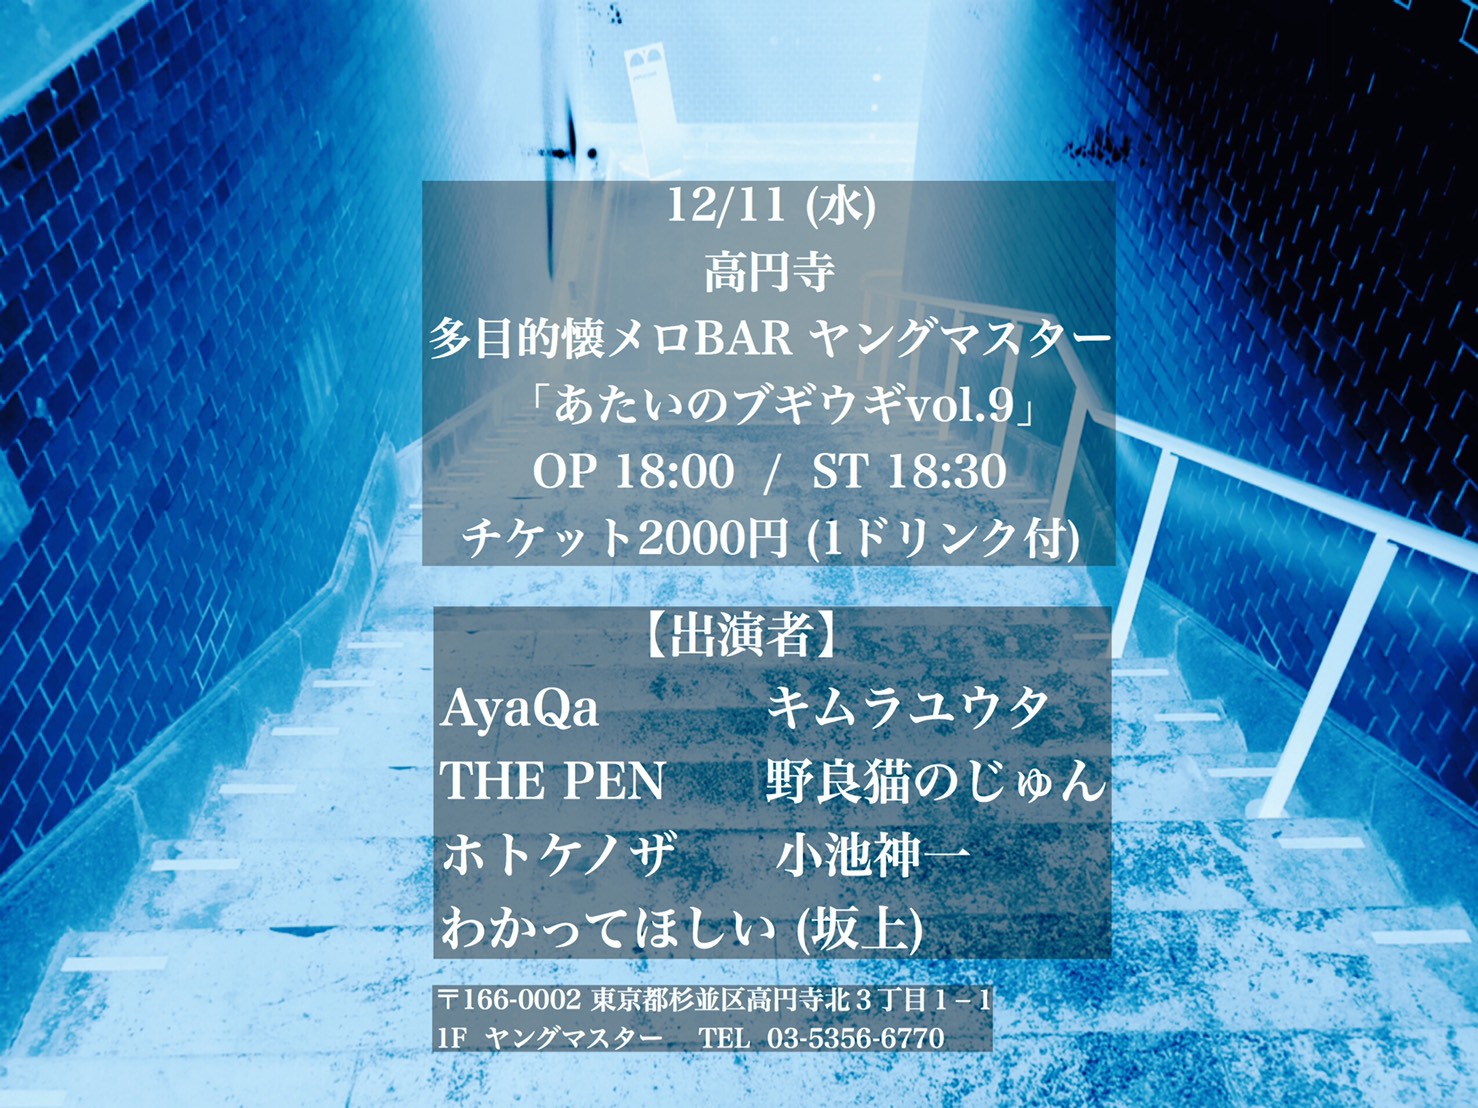 12/11 (水) ライブイベント「あたいのブギウギvol.9」 OP 18:00 / ST 18:30 チケット2000円 (1ドリンク付)